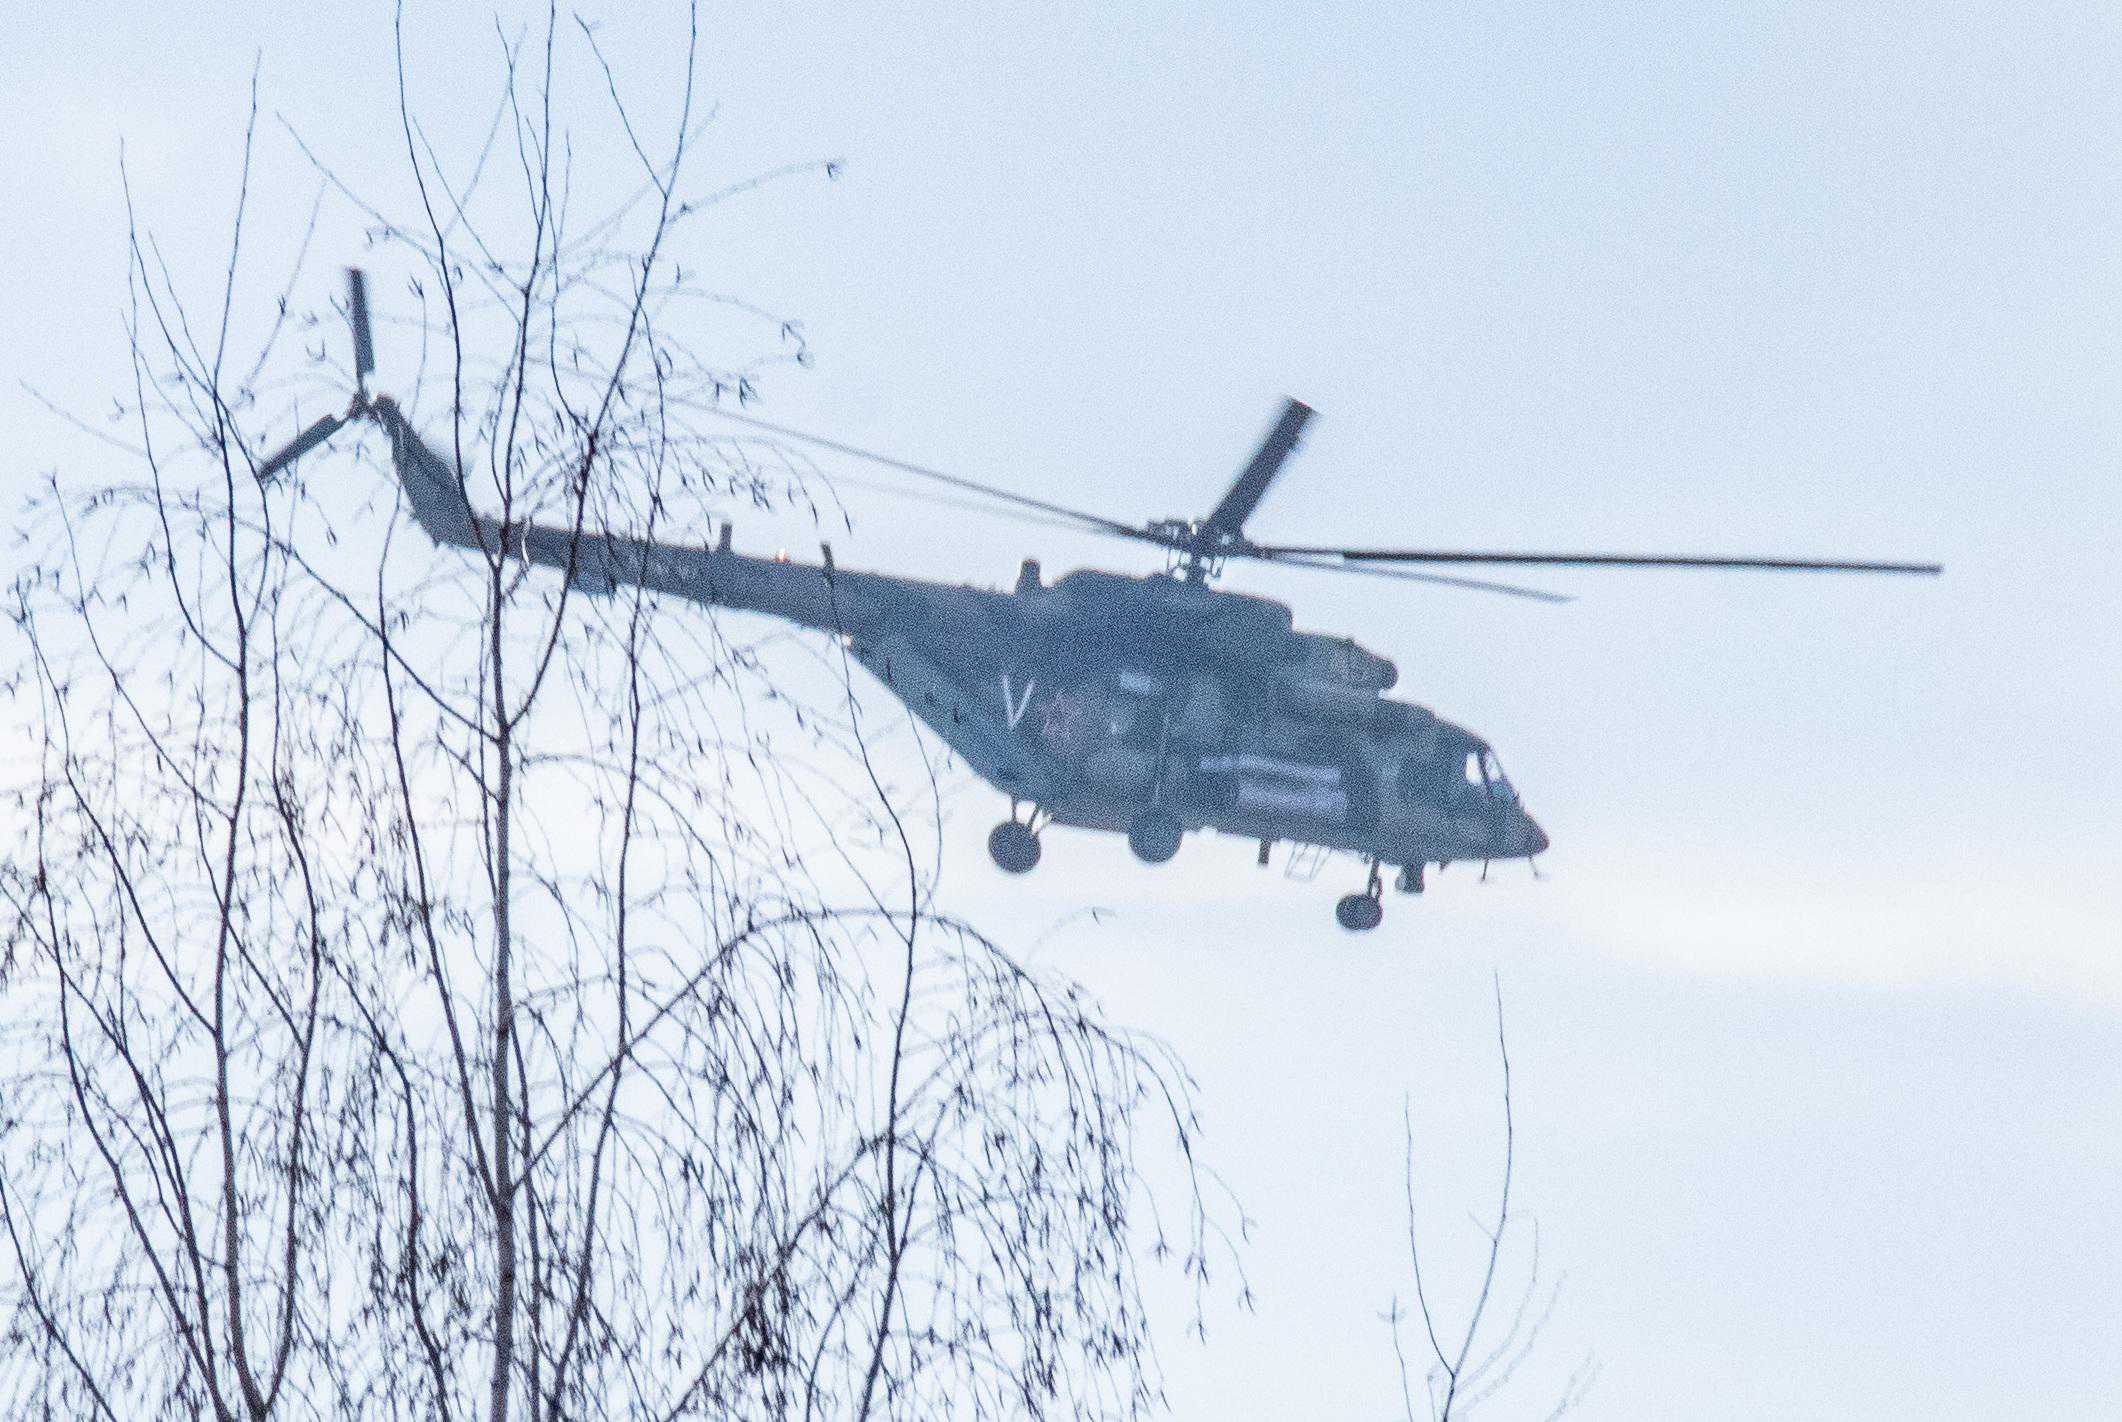 Russian helicopter in Minsk, Belarus (26 February 2022) 3 by Homoatrox